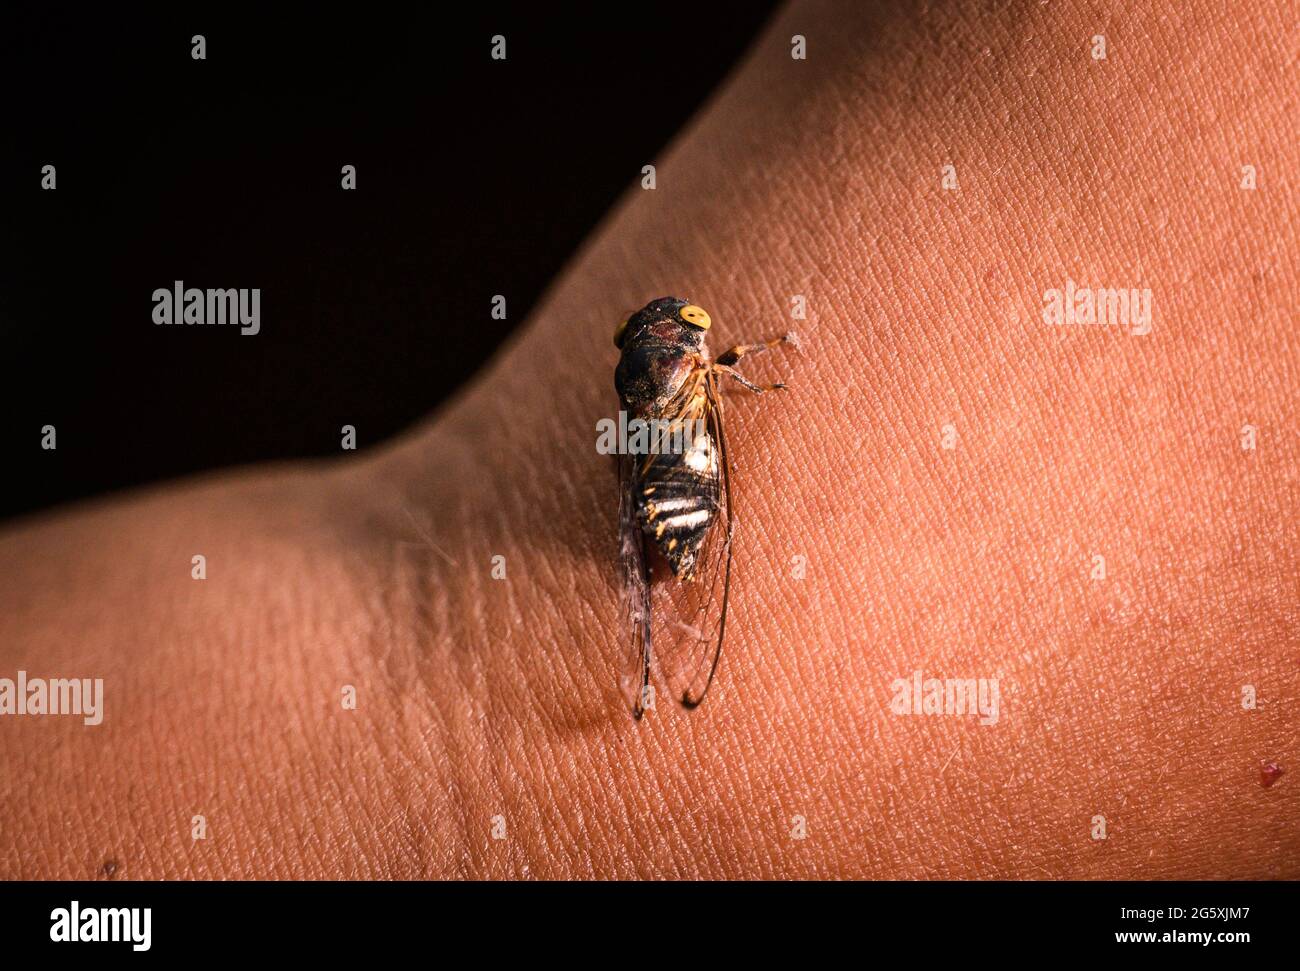 Lemuriana apicalis (Germar,1830) ist eine der indischen Arten von Zikaden. Zikaden sind Mitglieder der Superfamilie Cicadoidea und unterscheiden sich physisch durch ihre starken Körper, ihre breiten Köpfe, ihre durchsichtigen Flügel und ihre großen zusammengesetzten Augen. Zikaden sind berühmt für ihre Vorliebe, über viele Jahre vollständig zu verschwinden, nur um in regelmäßigen Abständen wieder in Kraft zu treten. Mehrere Kulturen betrachteten diese Insekten aufgrund ihrer ungewöhnlichen Lebenszyklen als mächtige Symbole der Wiedergeburt. Die Zikade hat den längsten Lebenszyklus eines Insekts und reicht von 2 bis 17 Jahren. Brut X (Brut 10), eine der Periodika CI Stockfoto